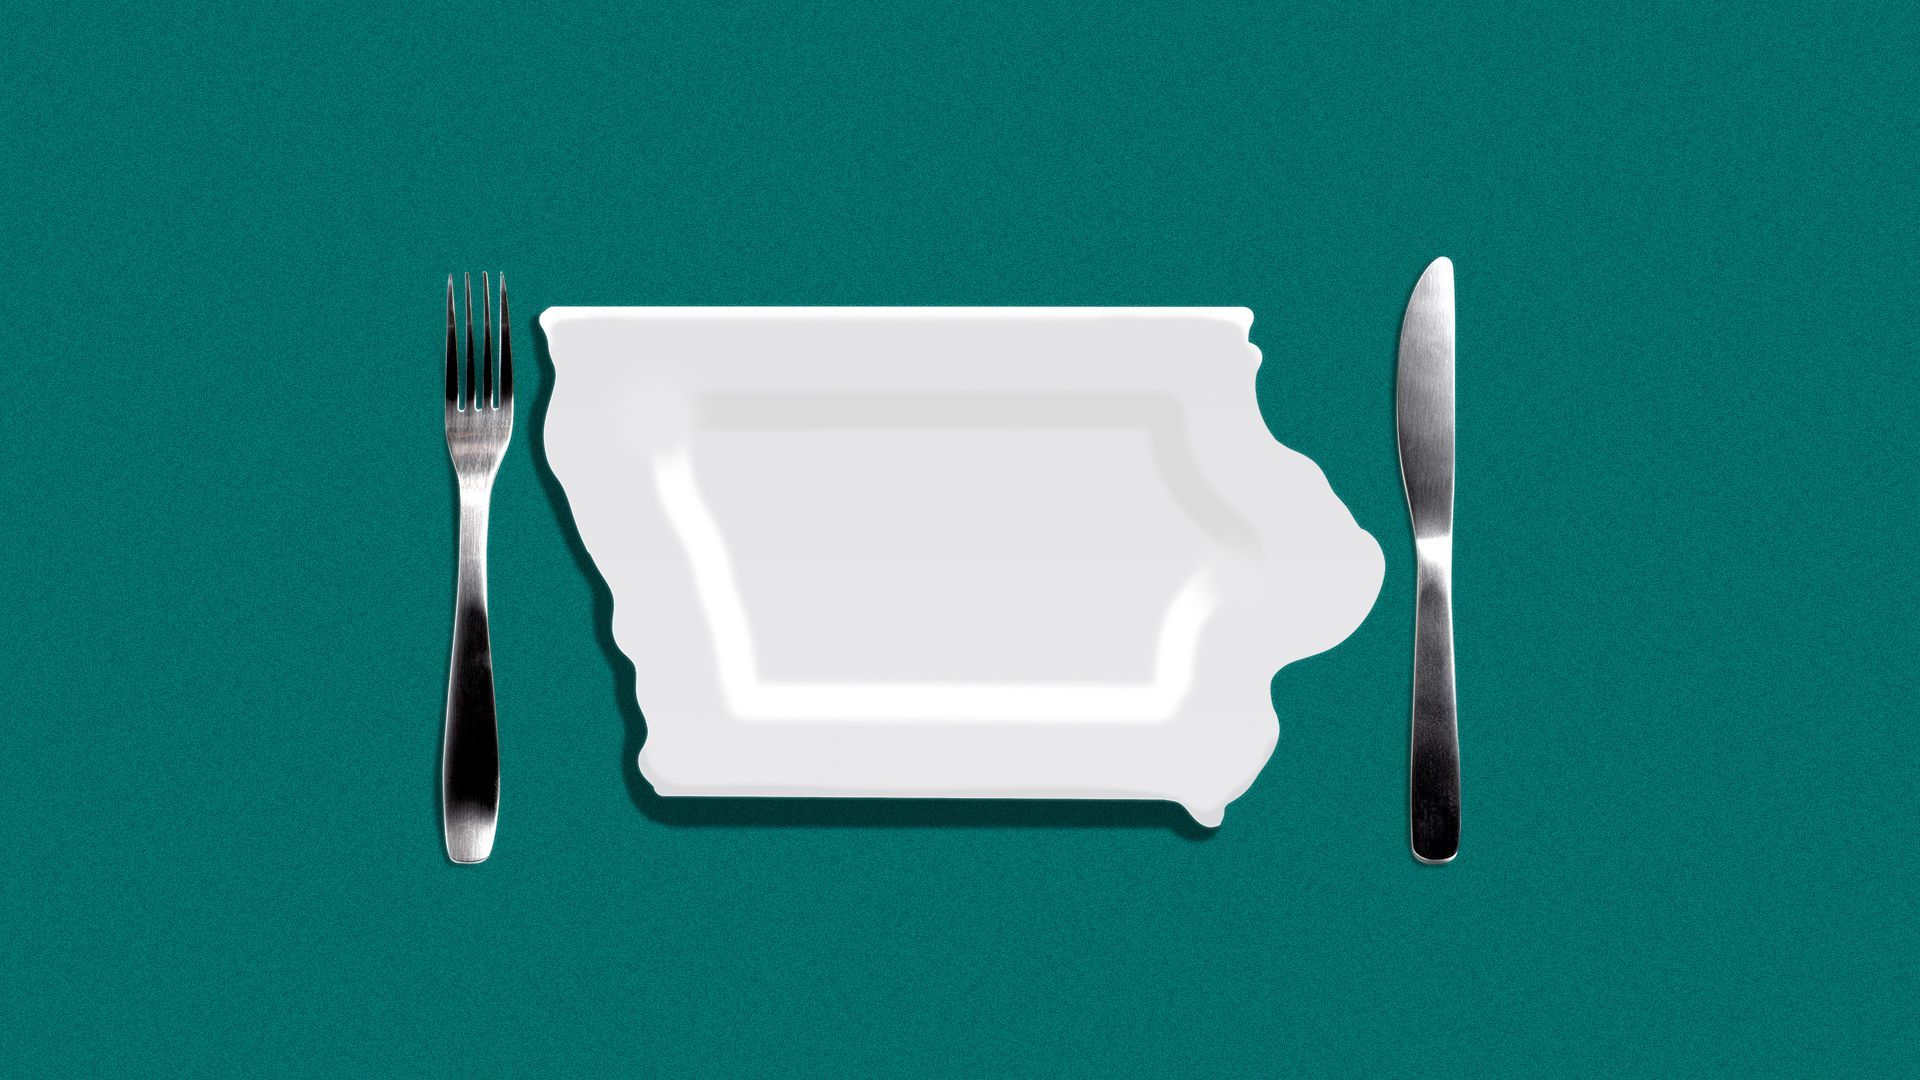 Fork, knife and plate illustration